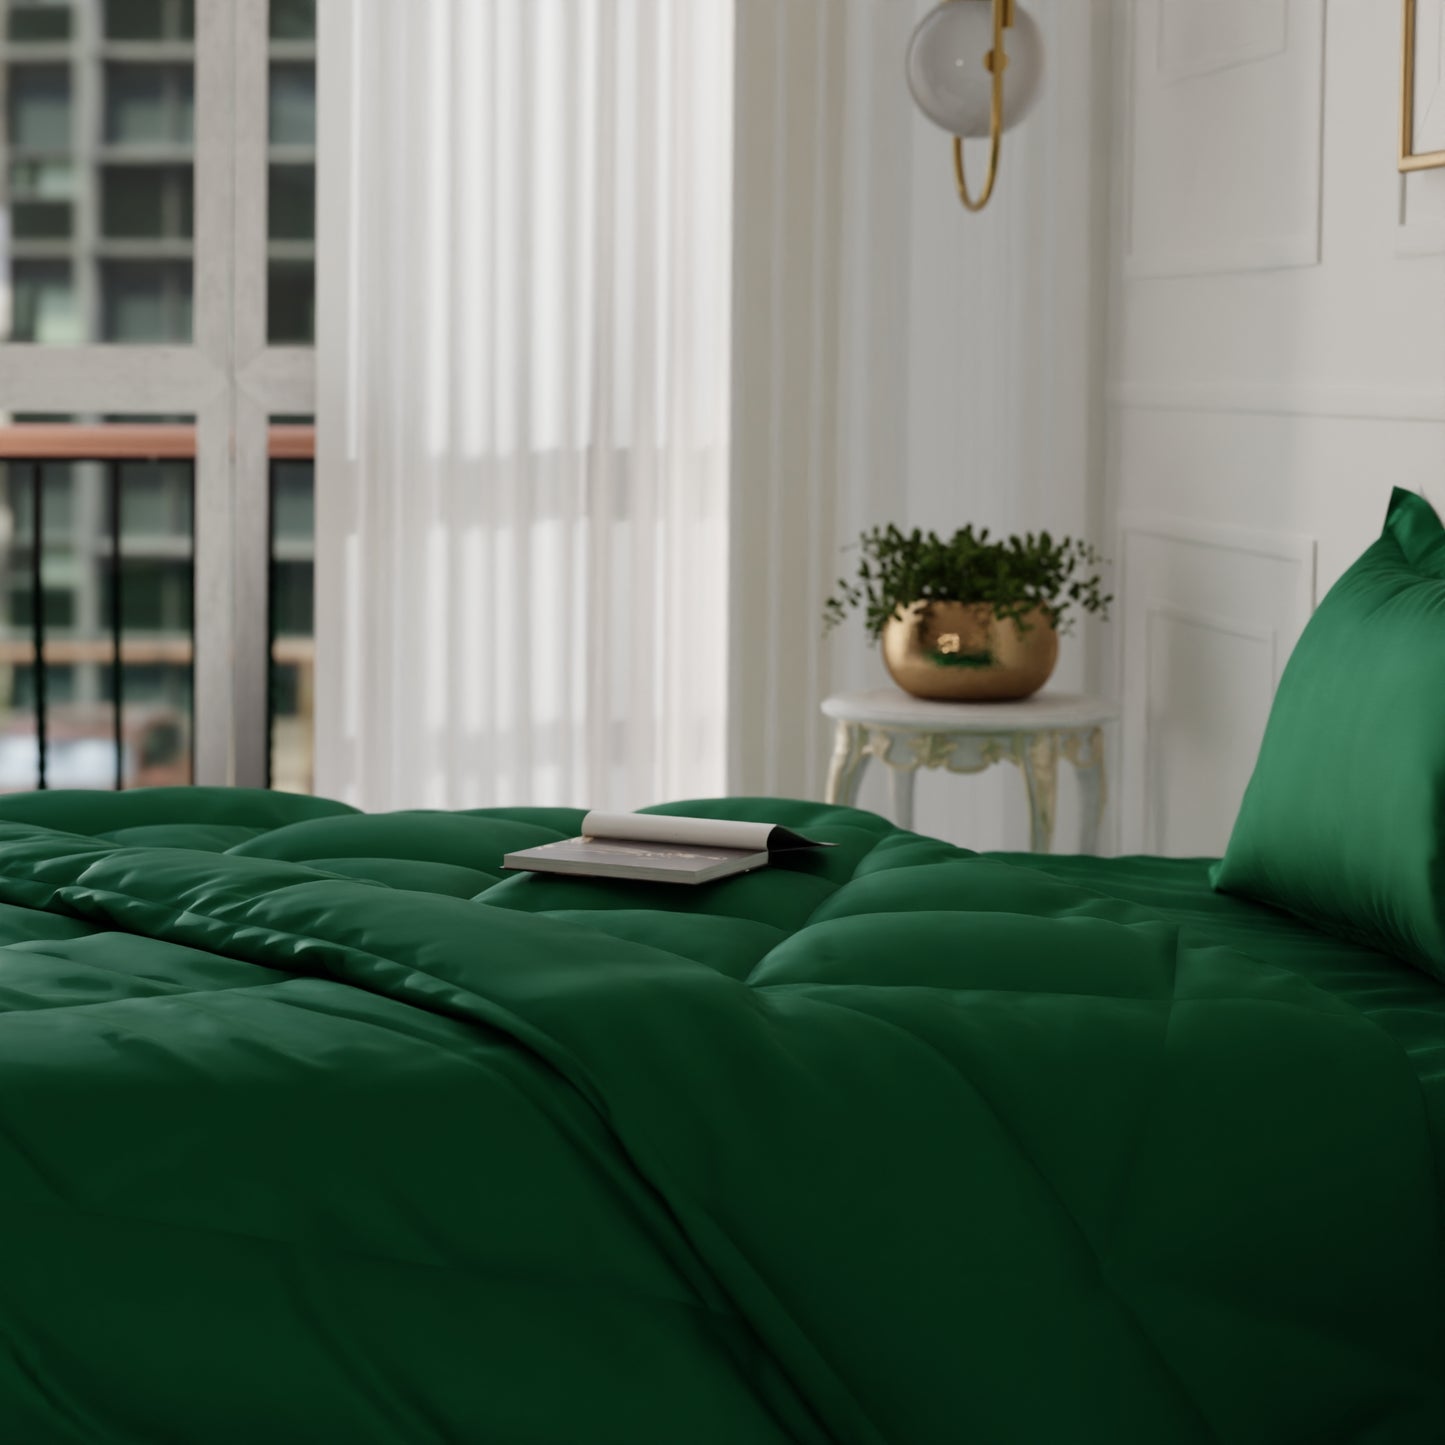 Emerald Green Comforter